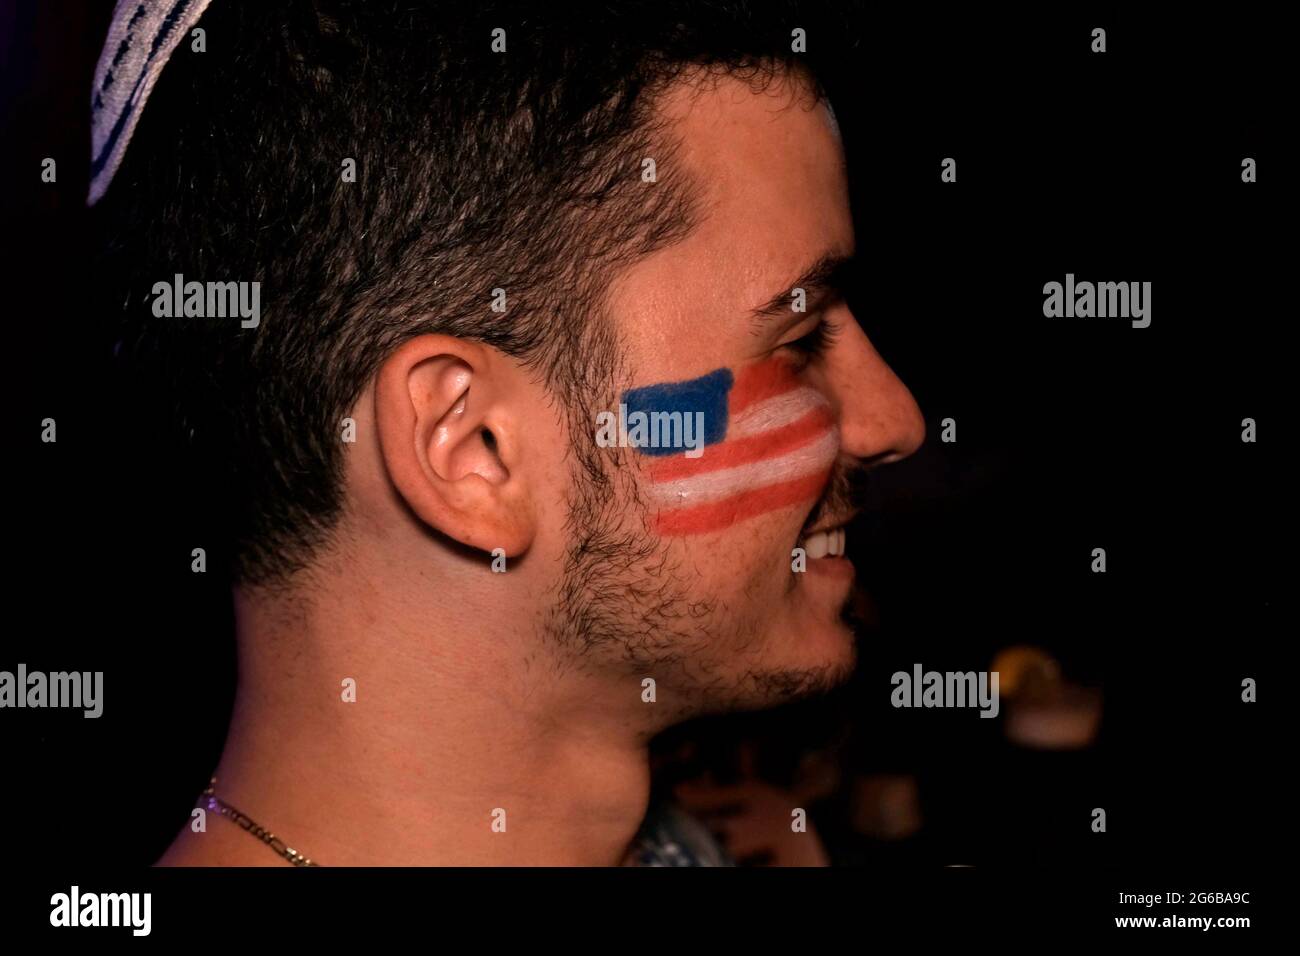 Le drapeau américain est peint sur le visage d'un jeune homme lors de la célébration du jour de l'indépendance du 4 juillet 2021 à Jérusalem, en Israël. Banque D'Images